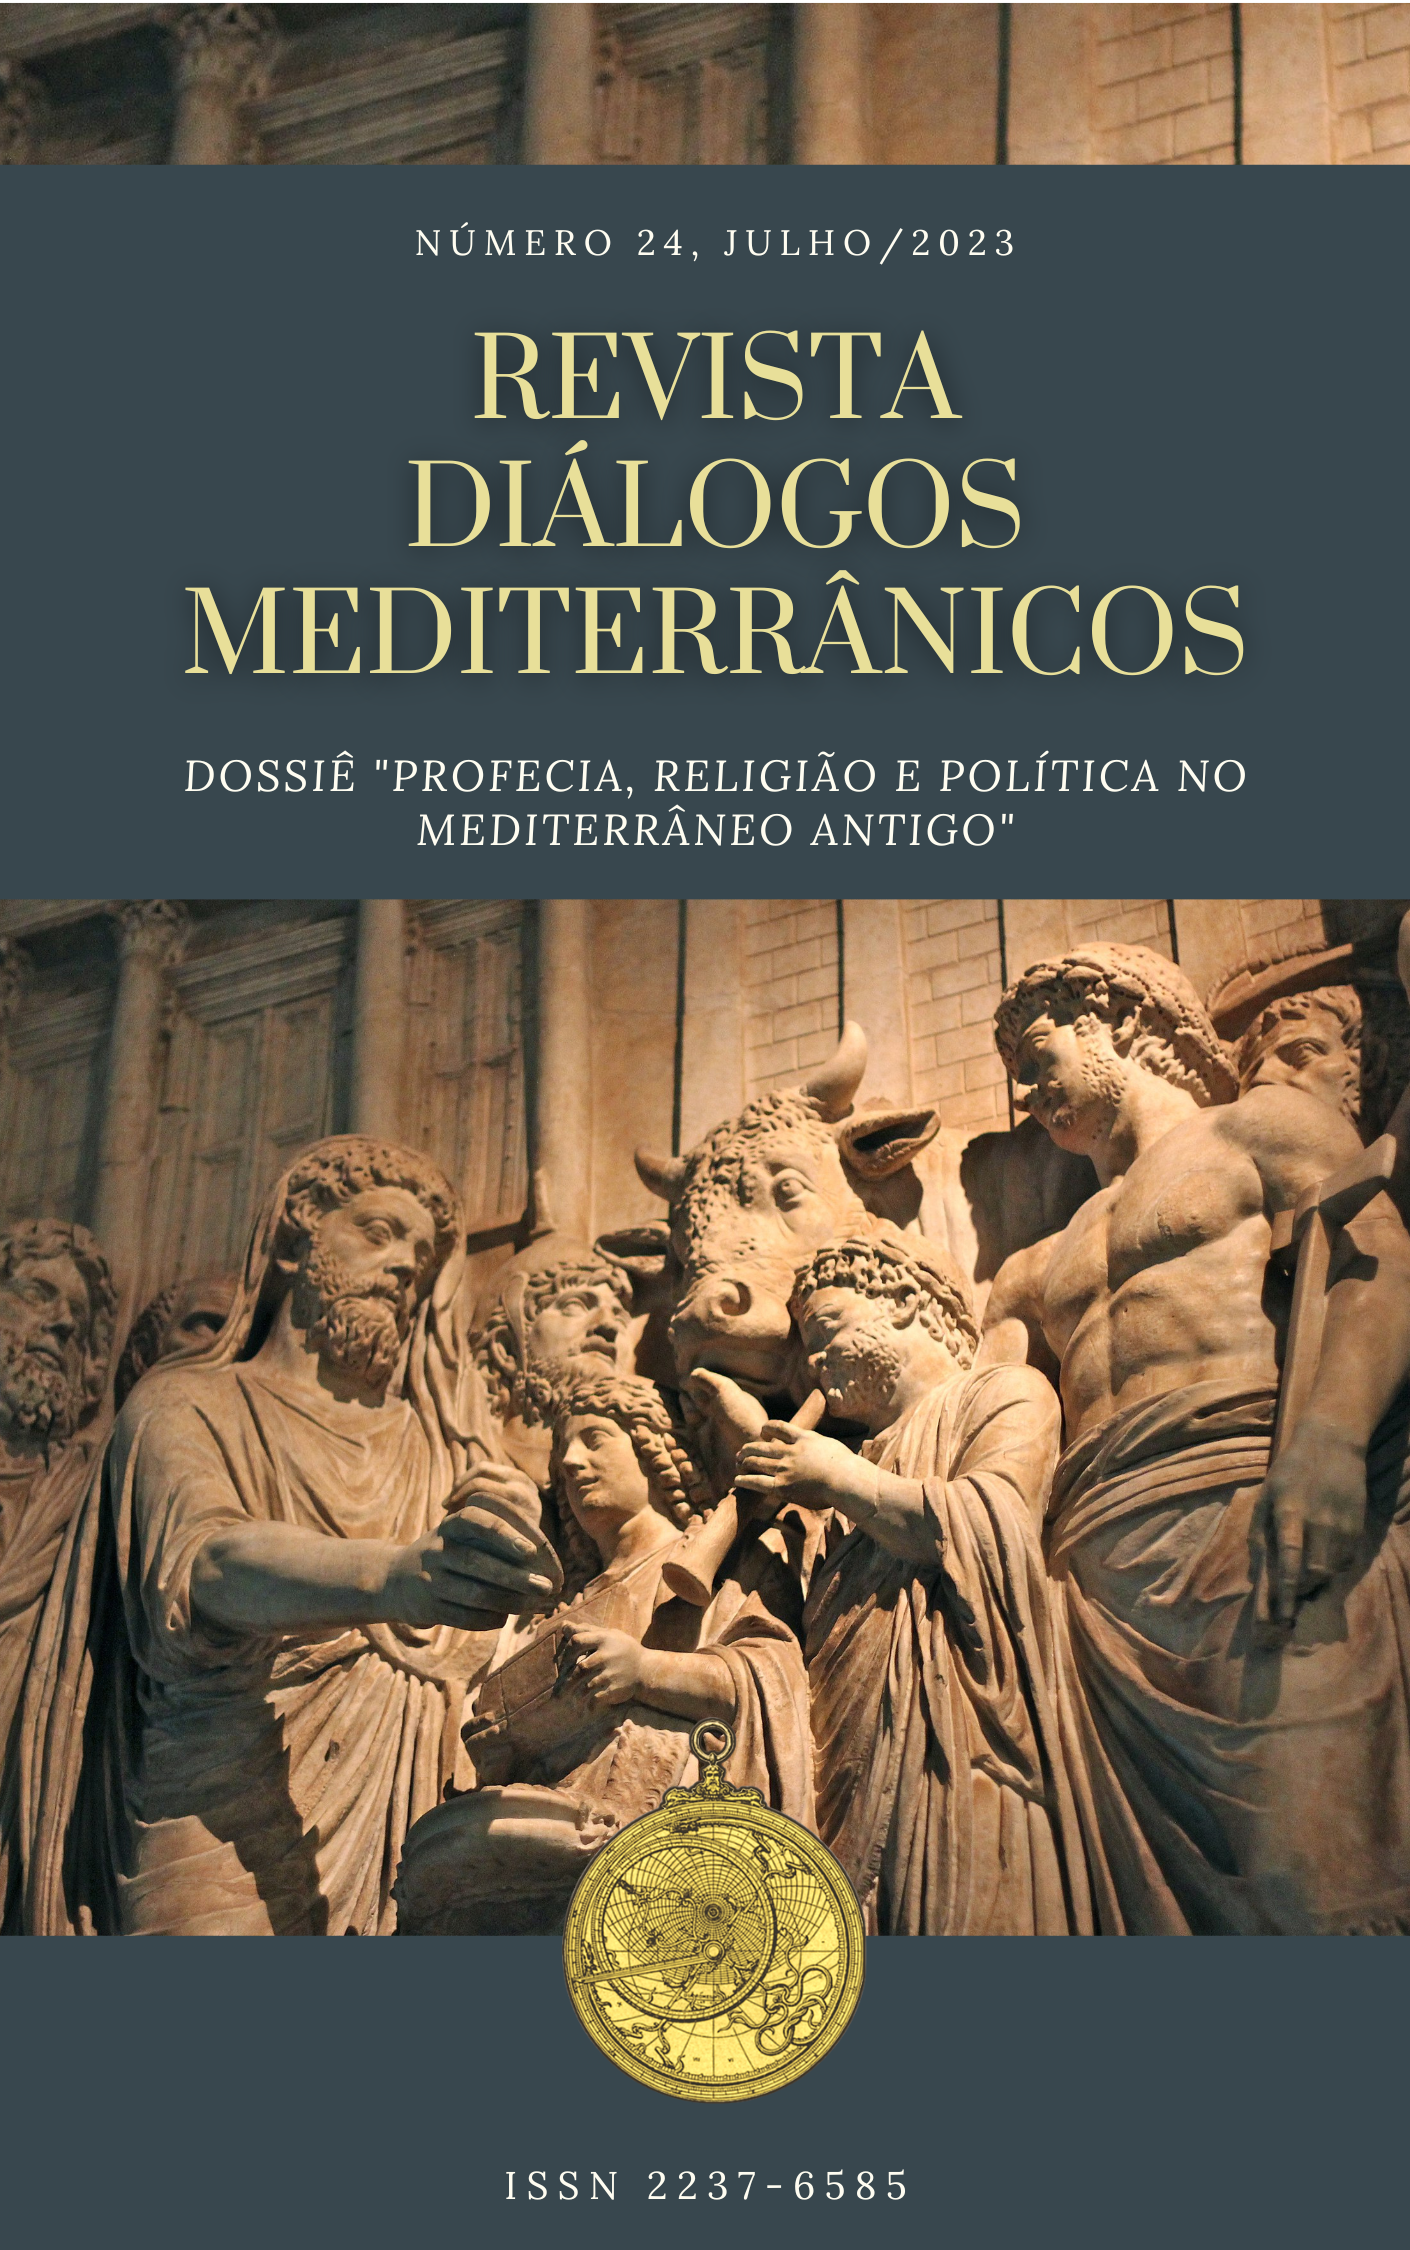 					Ver Núm. 24 (2023): Revista Diálogos Mediterrânicos - Dossiê "Profecia, religião e política no Mediterrâneo Antigo"
				